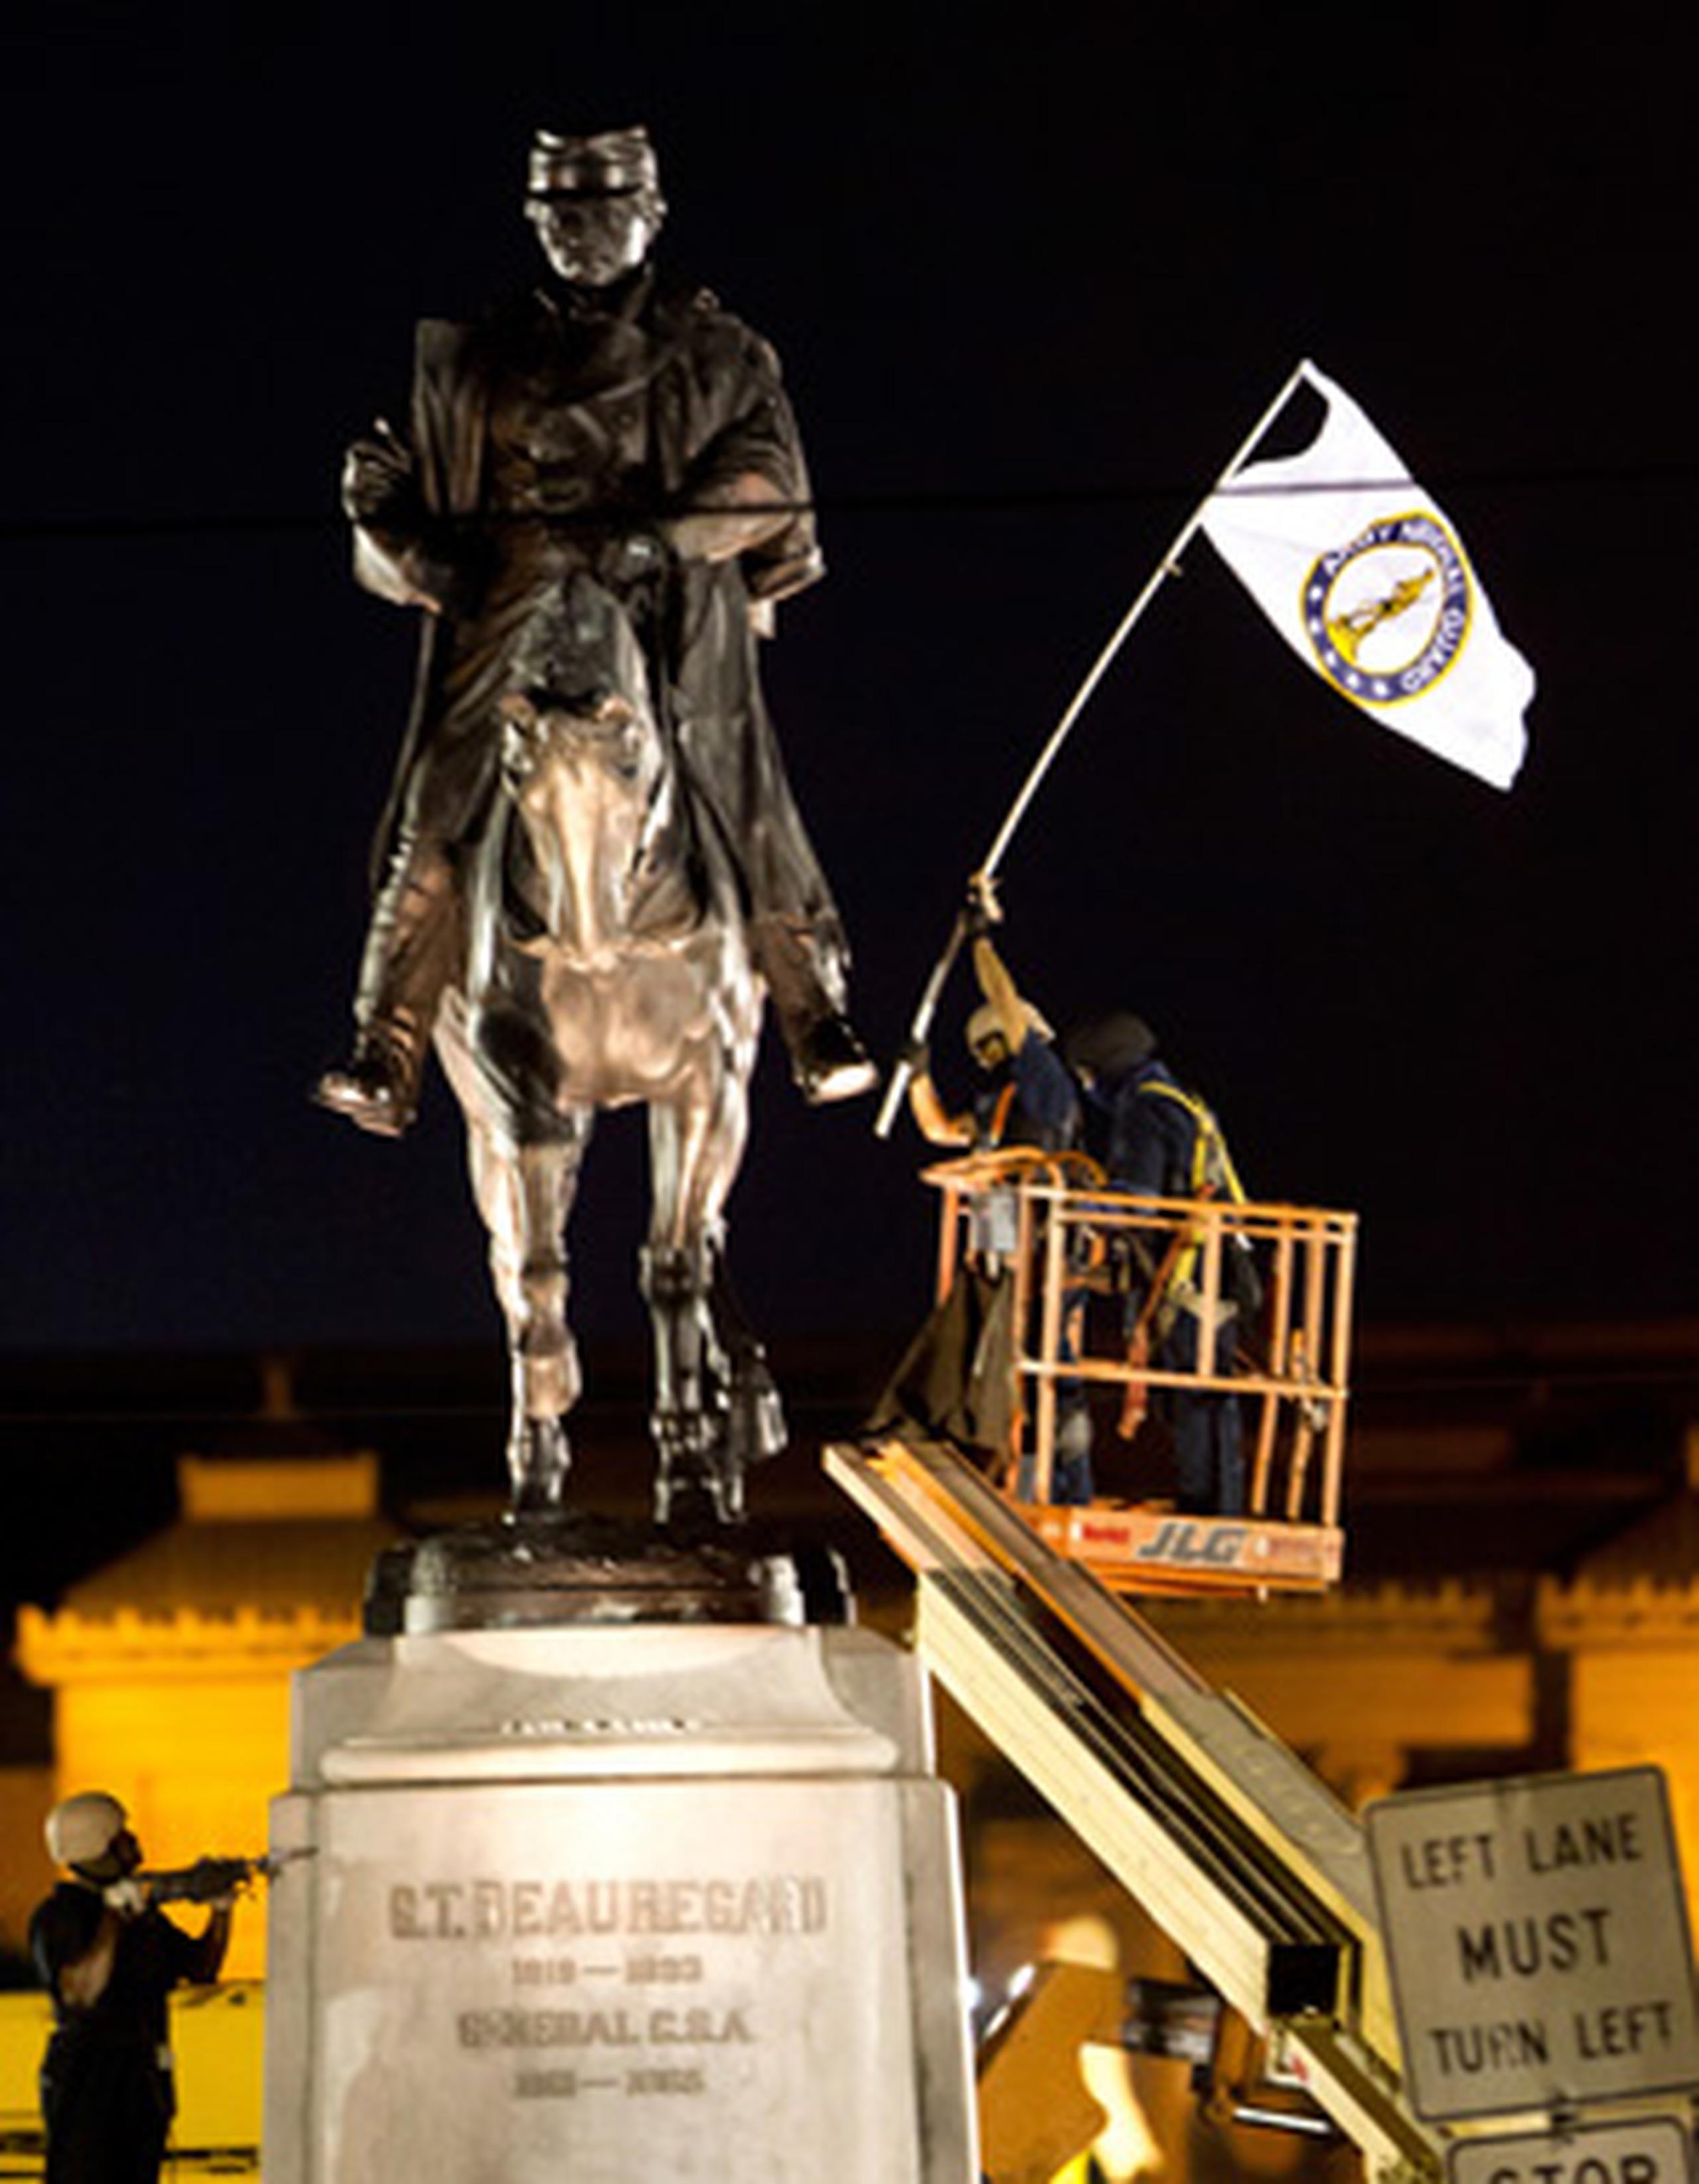 El traslado de la estatua siguió al de una escultura del único presidente confederado y al de un monumento de recuerdo a una rebelión blanca contra un gobierno birracial de la era de la Reconstrucción en la ciudad.  (AP)